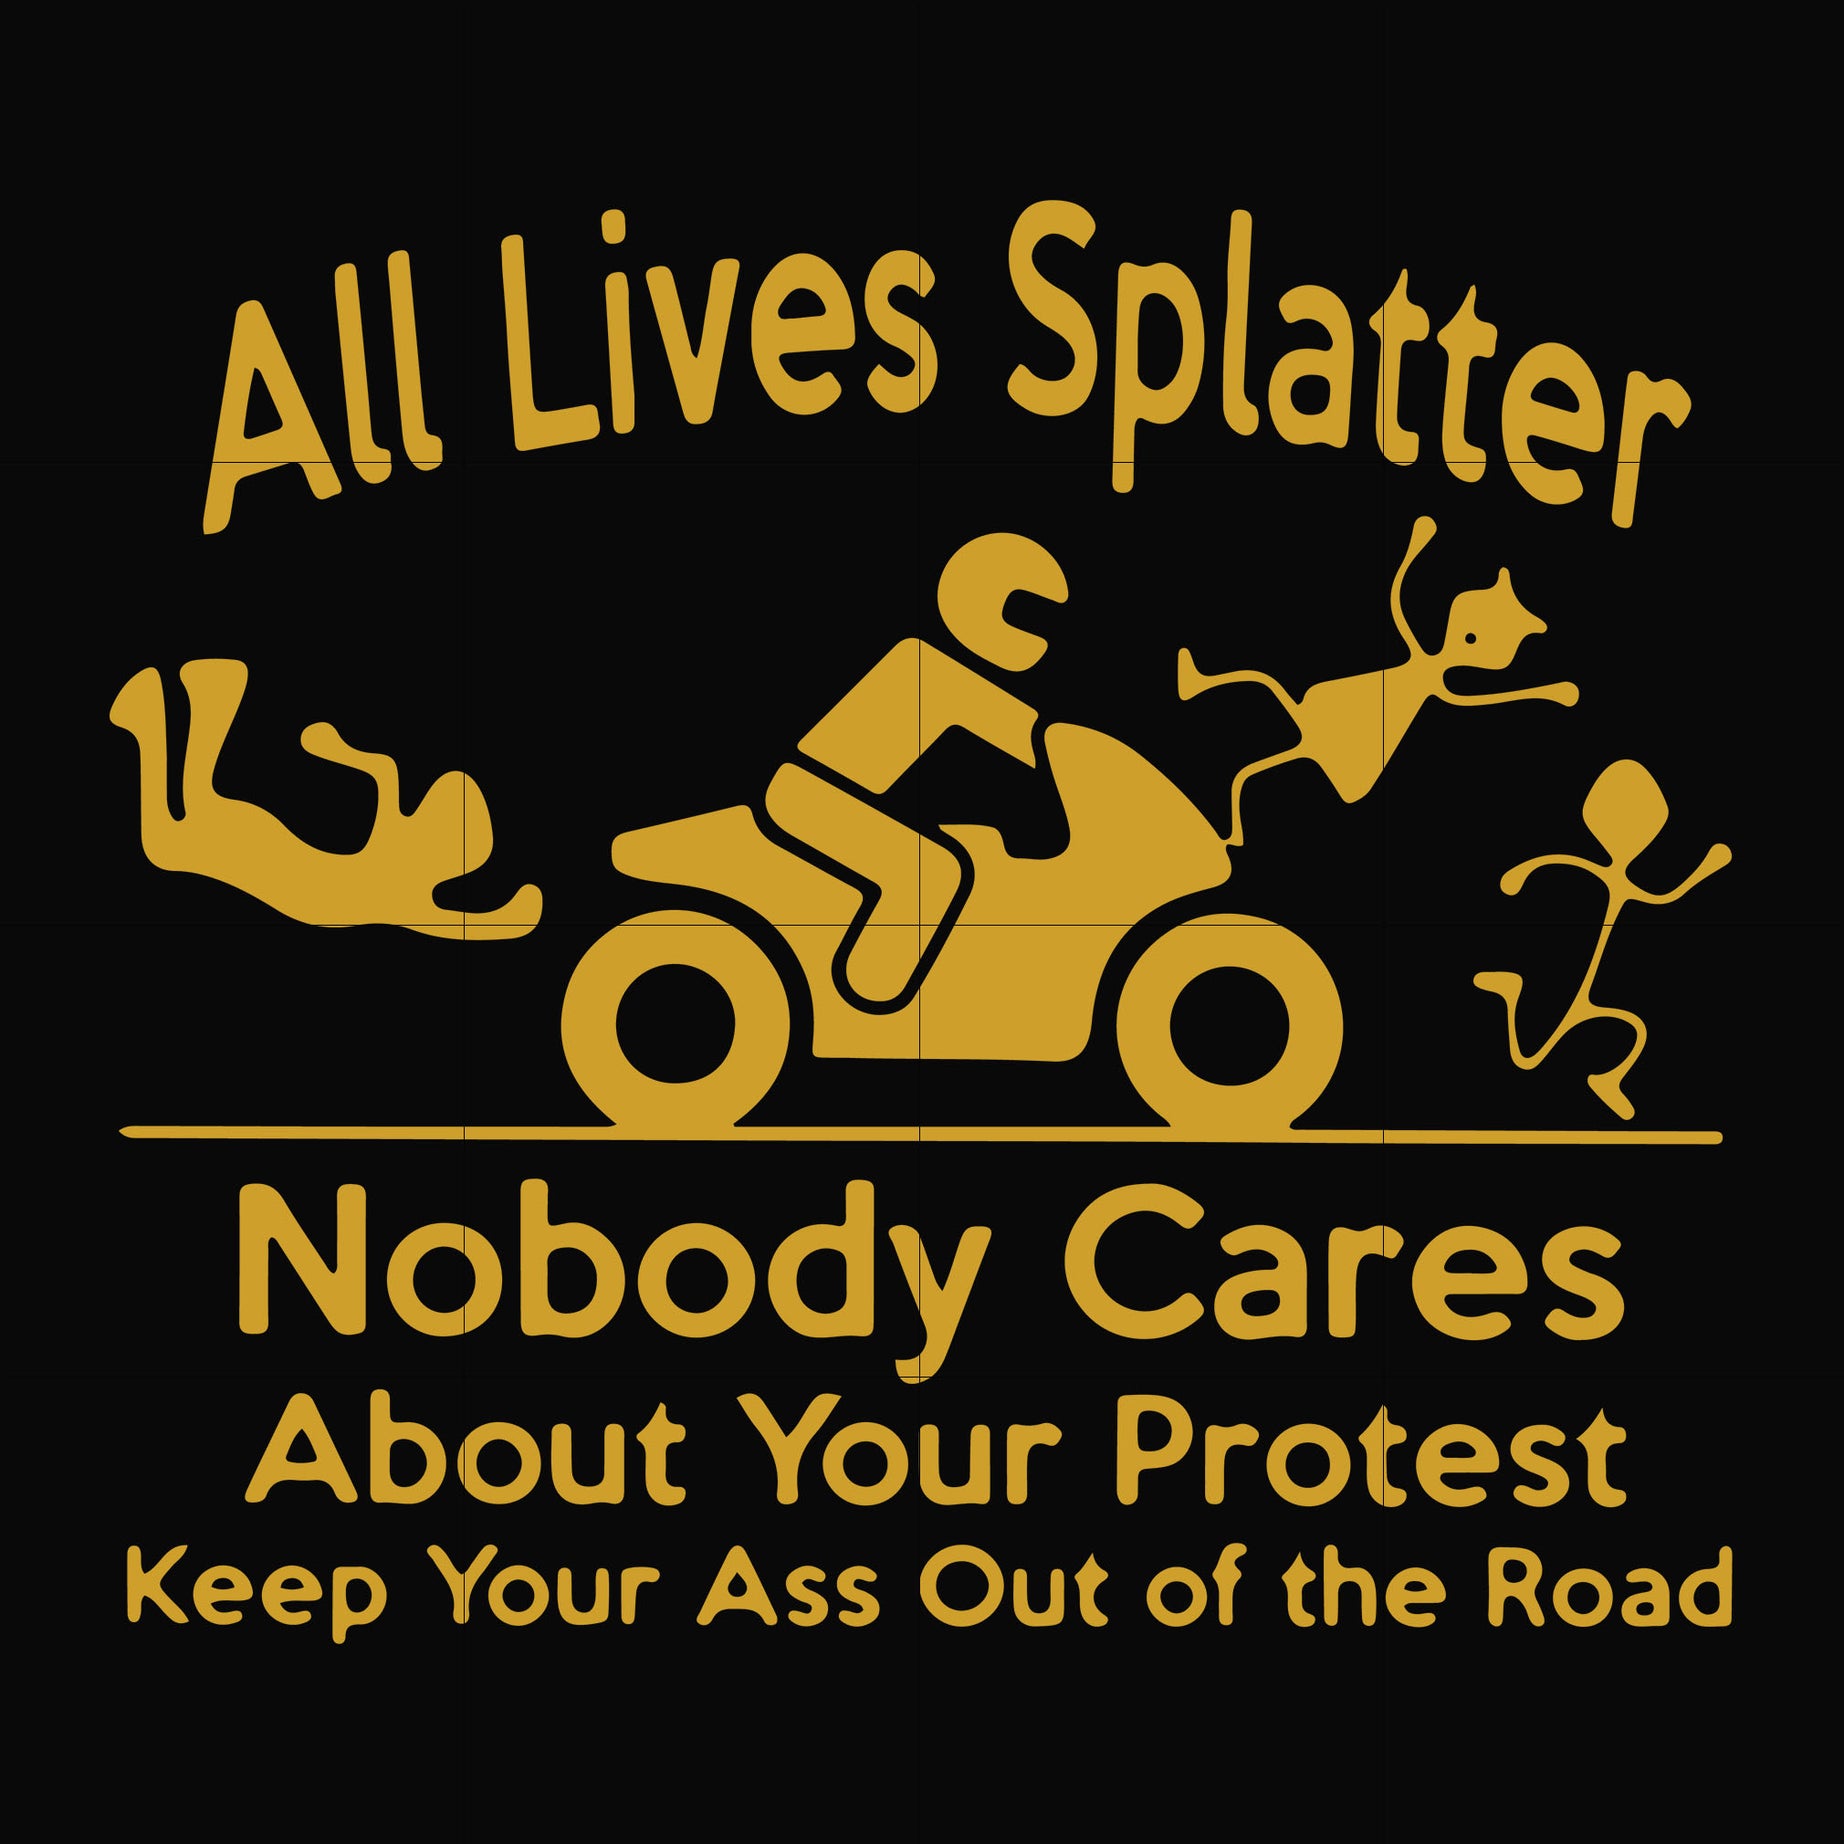 All lives splatter nobody cares about your protest svg, png, dxf, eps digital file TD31072028